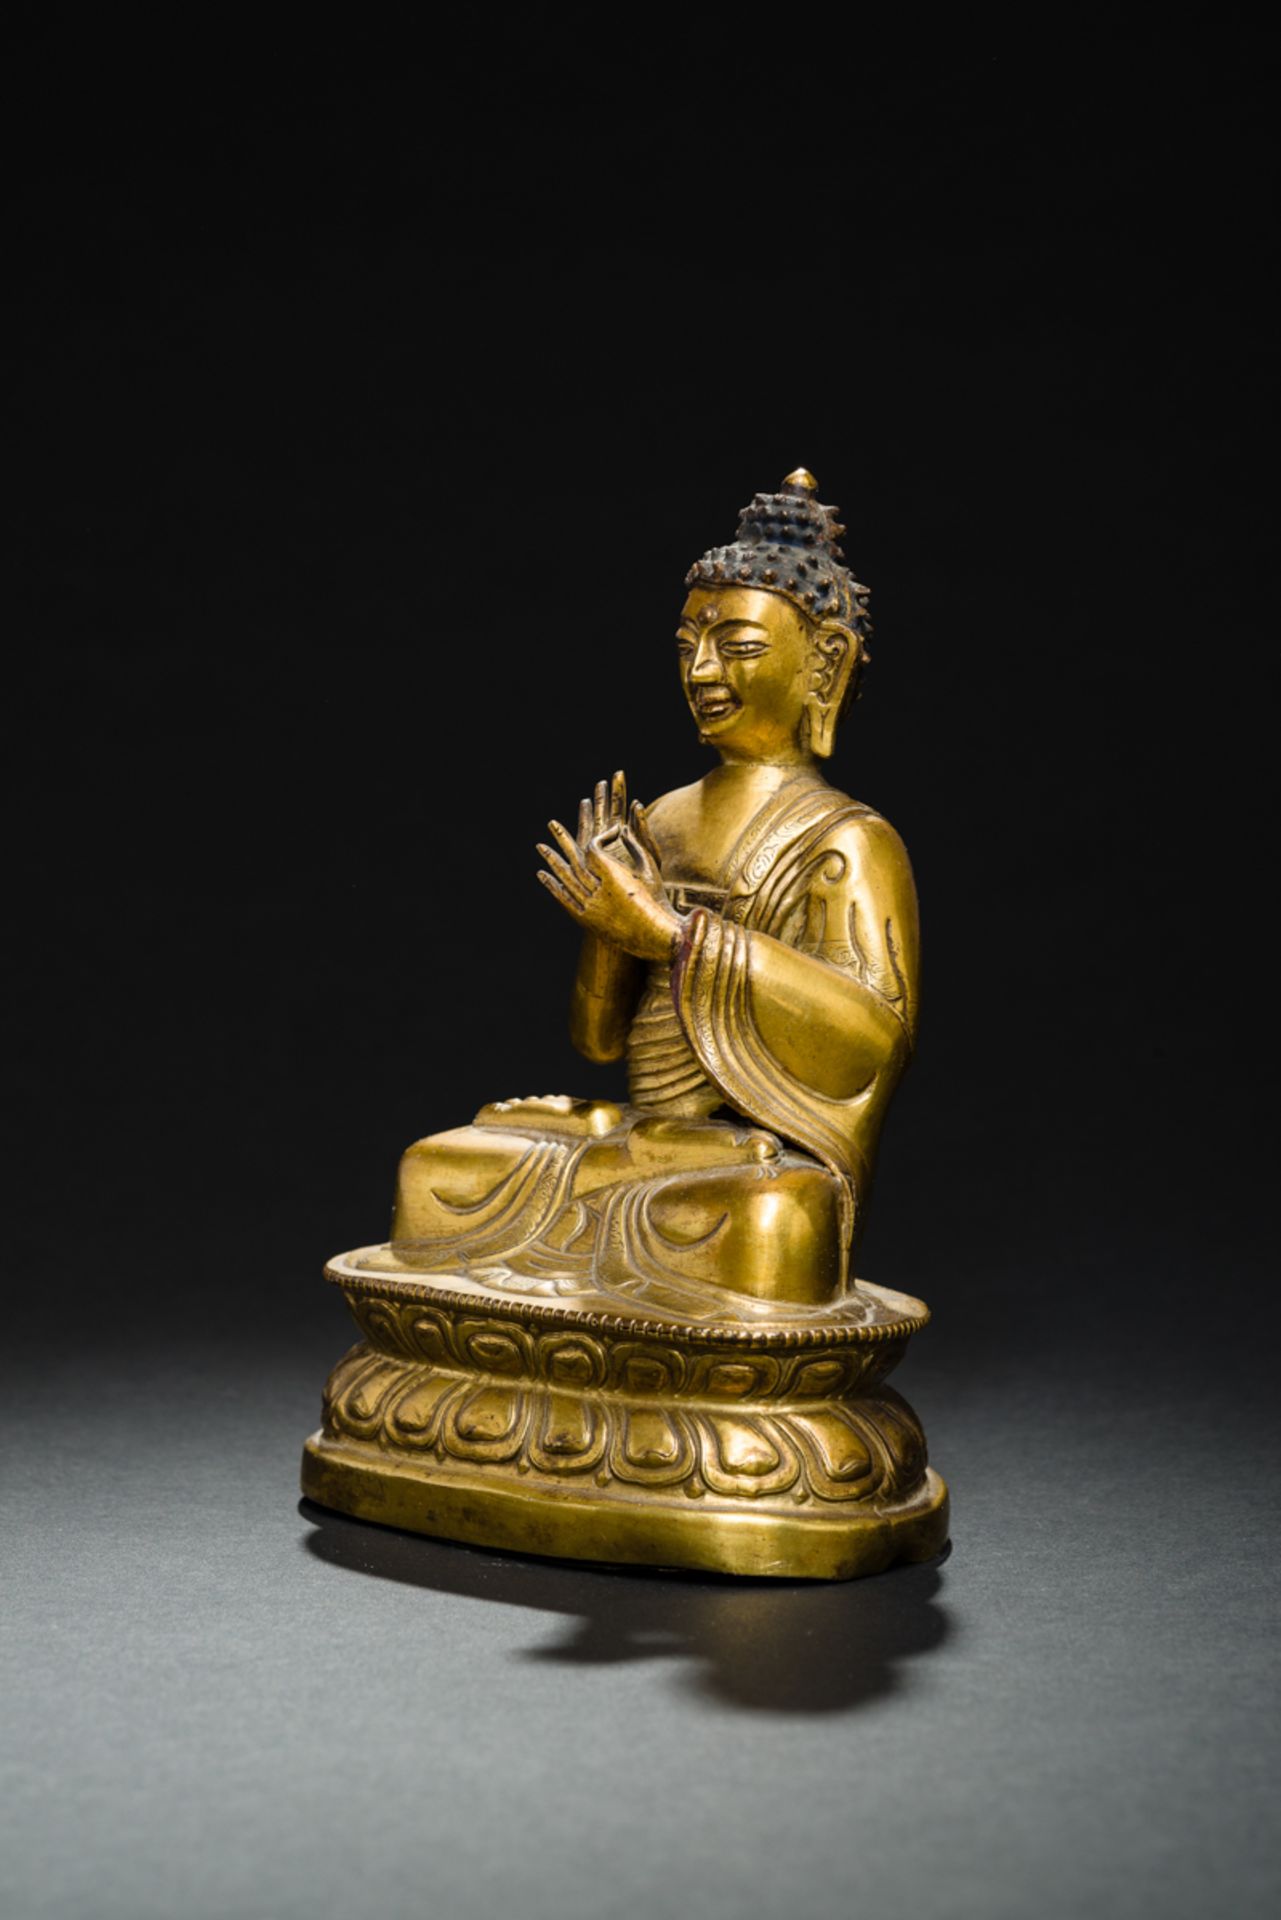 DER PREDIGENDE BUDDHA SHAKYAMUNIFeuervergoldete Bronze. Sinotibetisch, Qing-Dynastie, fr. 19. Jh.In - Image 3 of 6